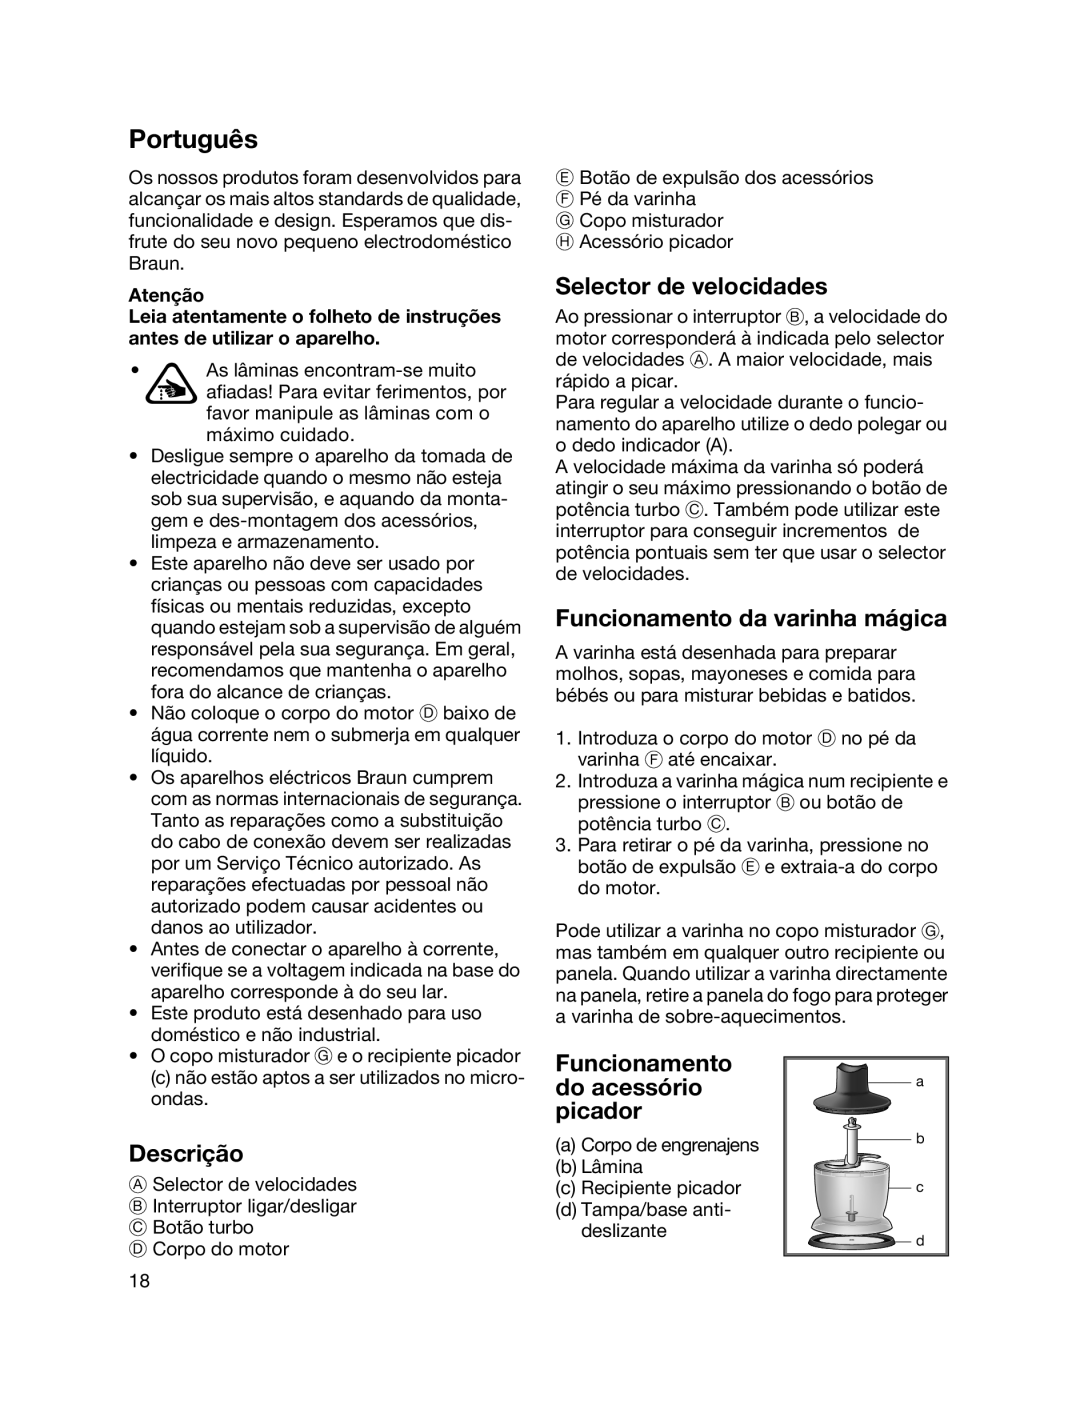 Braun MR700 manual Português, Funcionamento da varinha mágica, Descrição, Funcionamento do acessório picador 